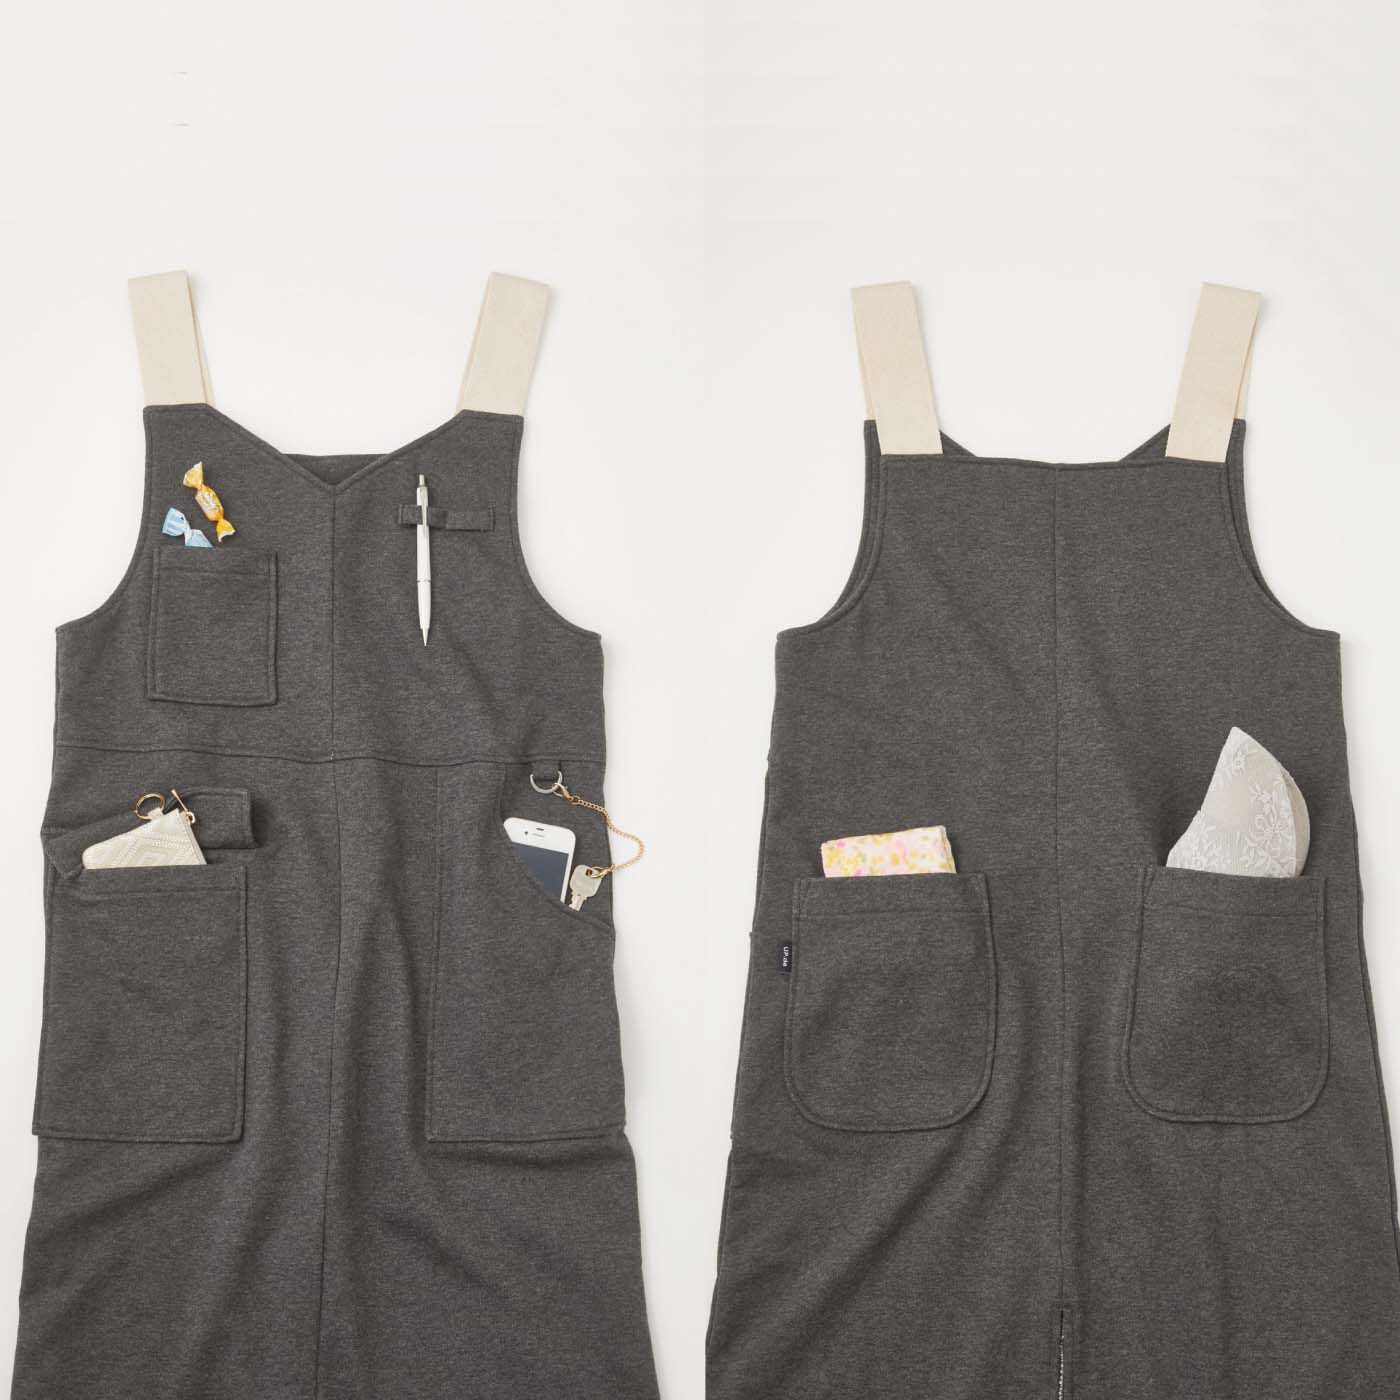 フェリシモの雑貨 Kraso|UP.de　着られるバッグ 身軽にお出かけポケットいっぱいカットソーサロペットスカートの会|5つのポケットを機能的に配置